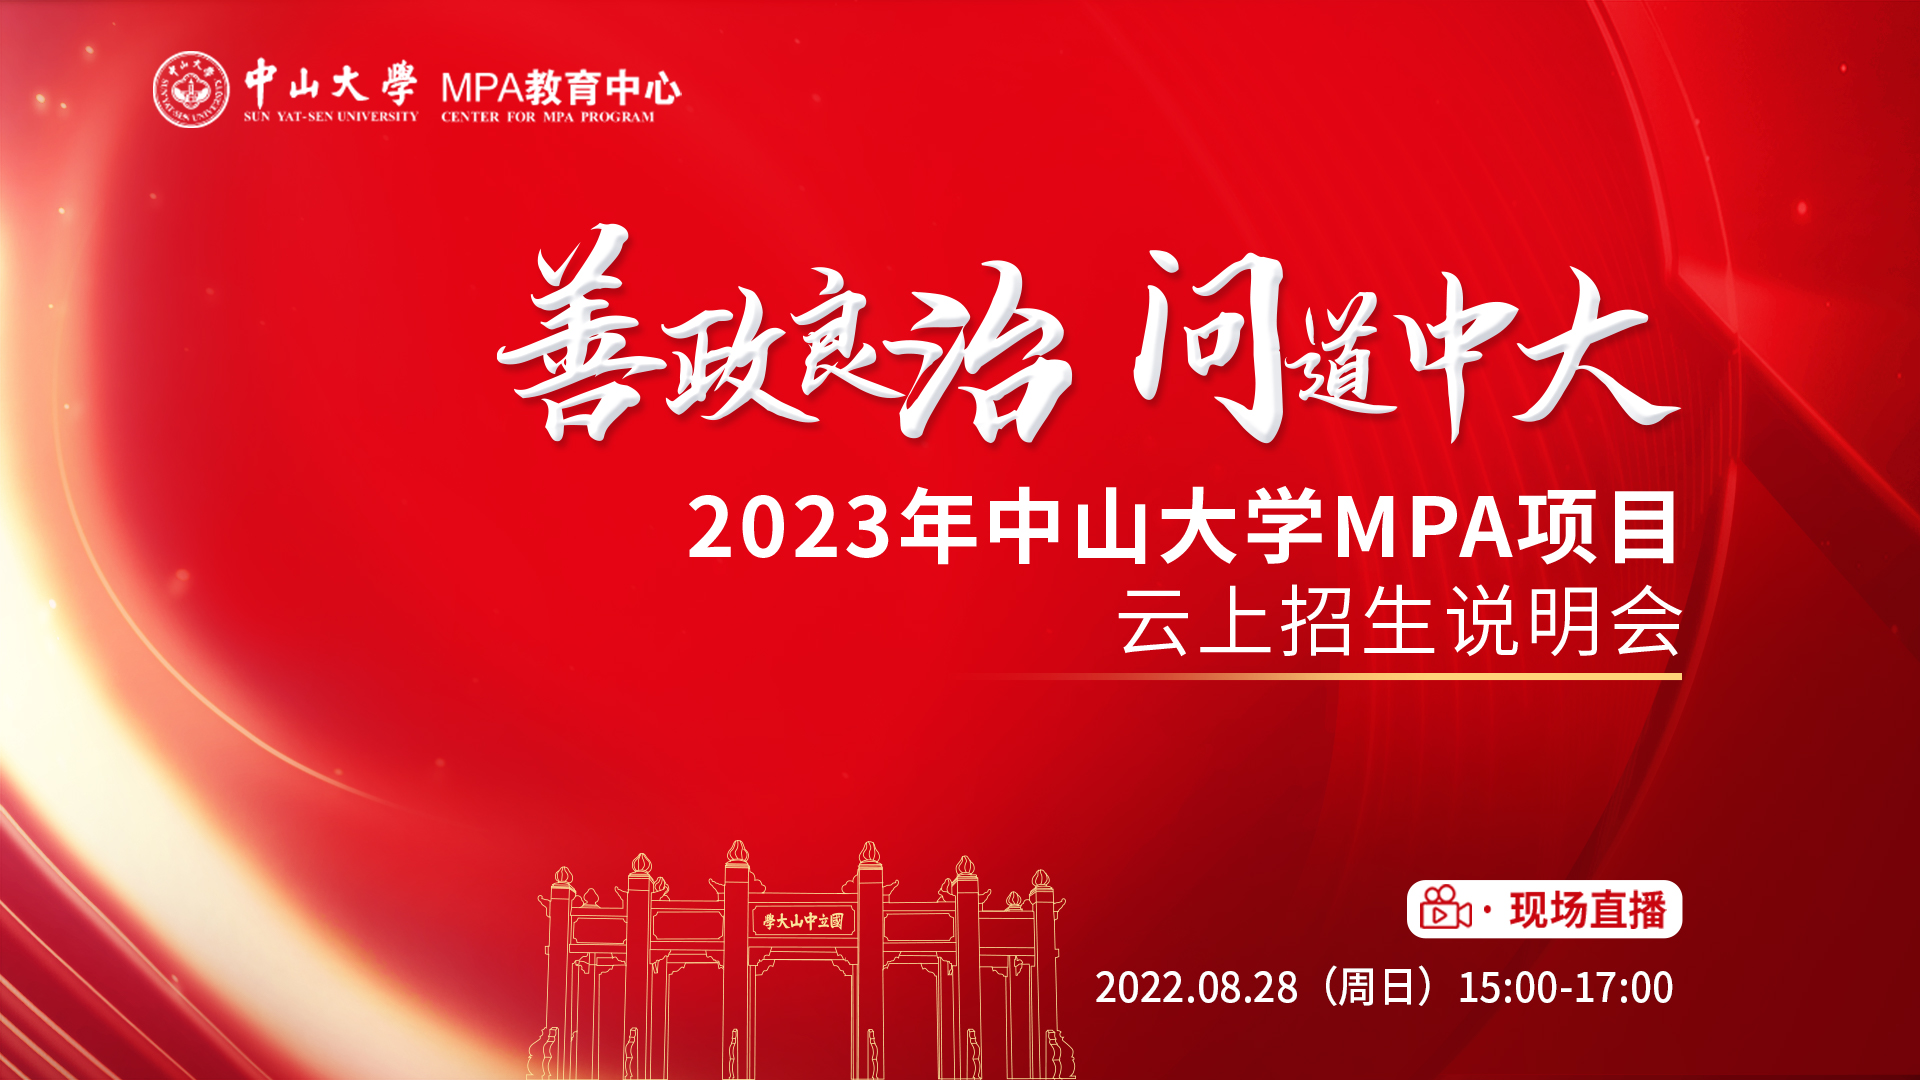 善政良治 问道中大——2023年中山大学MPA项目云上招生说明会邀你一起载梦起航